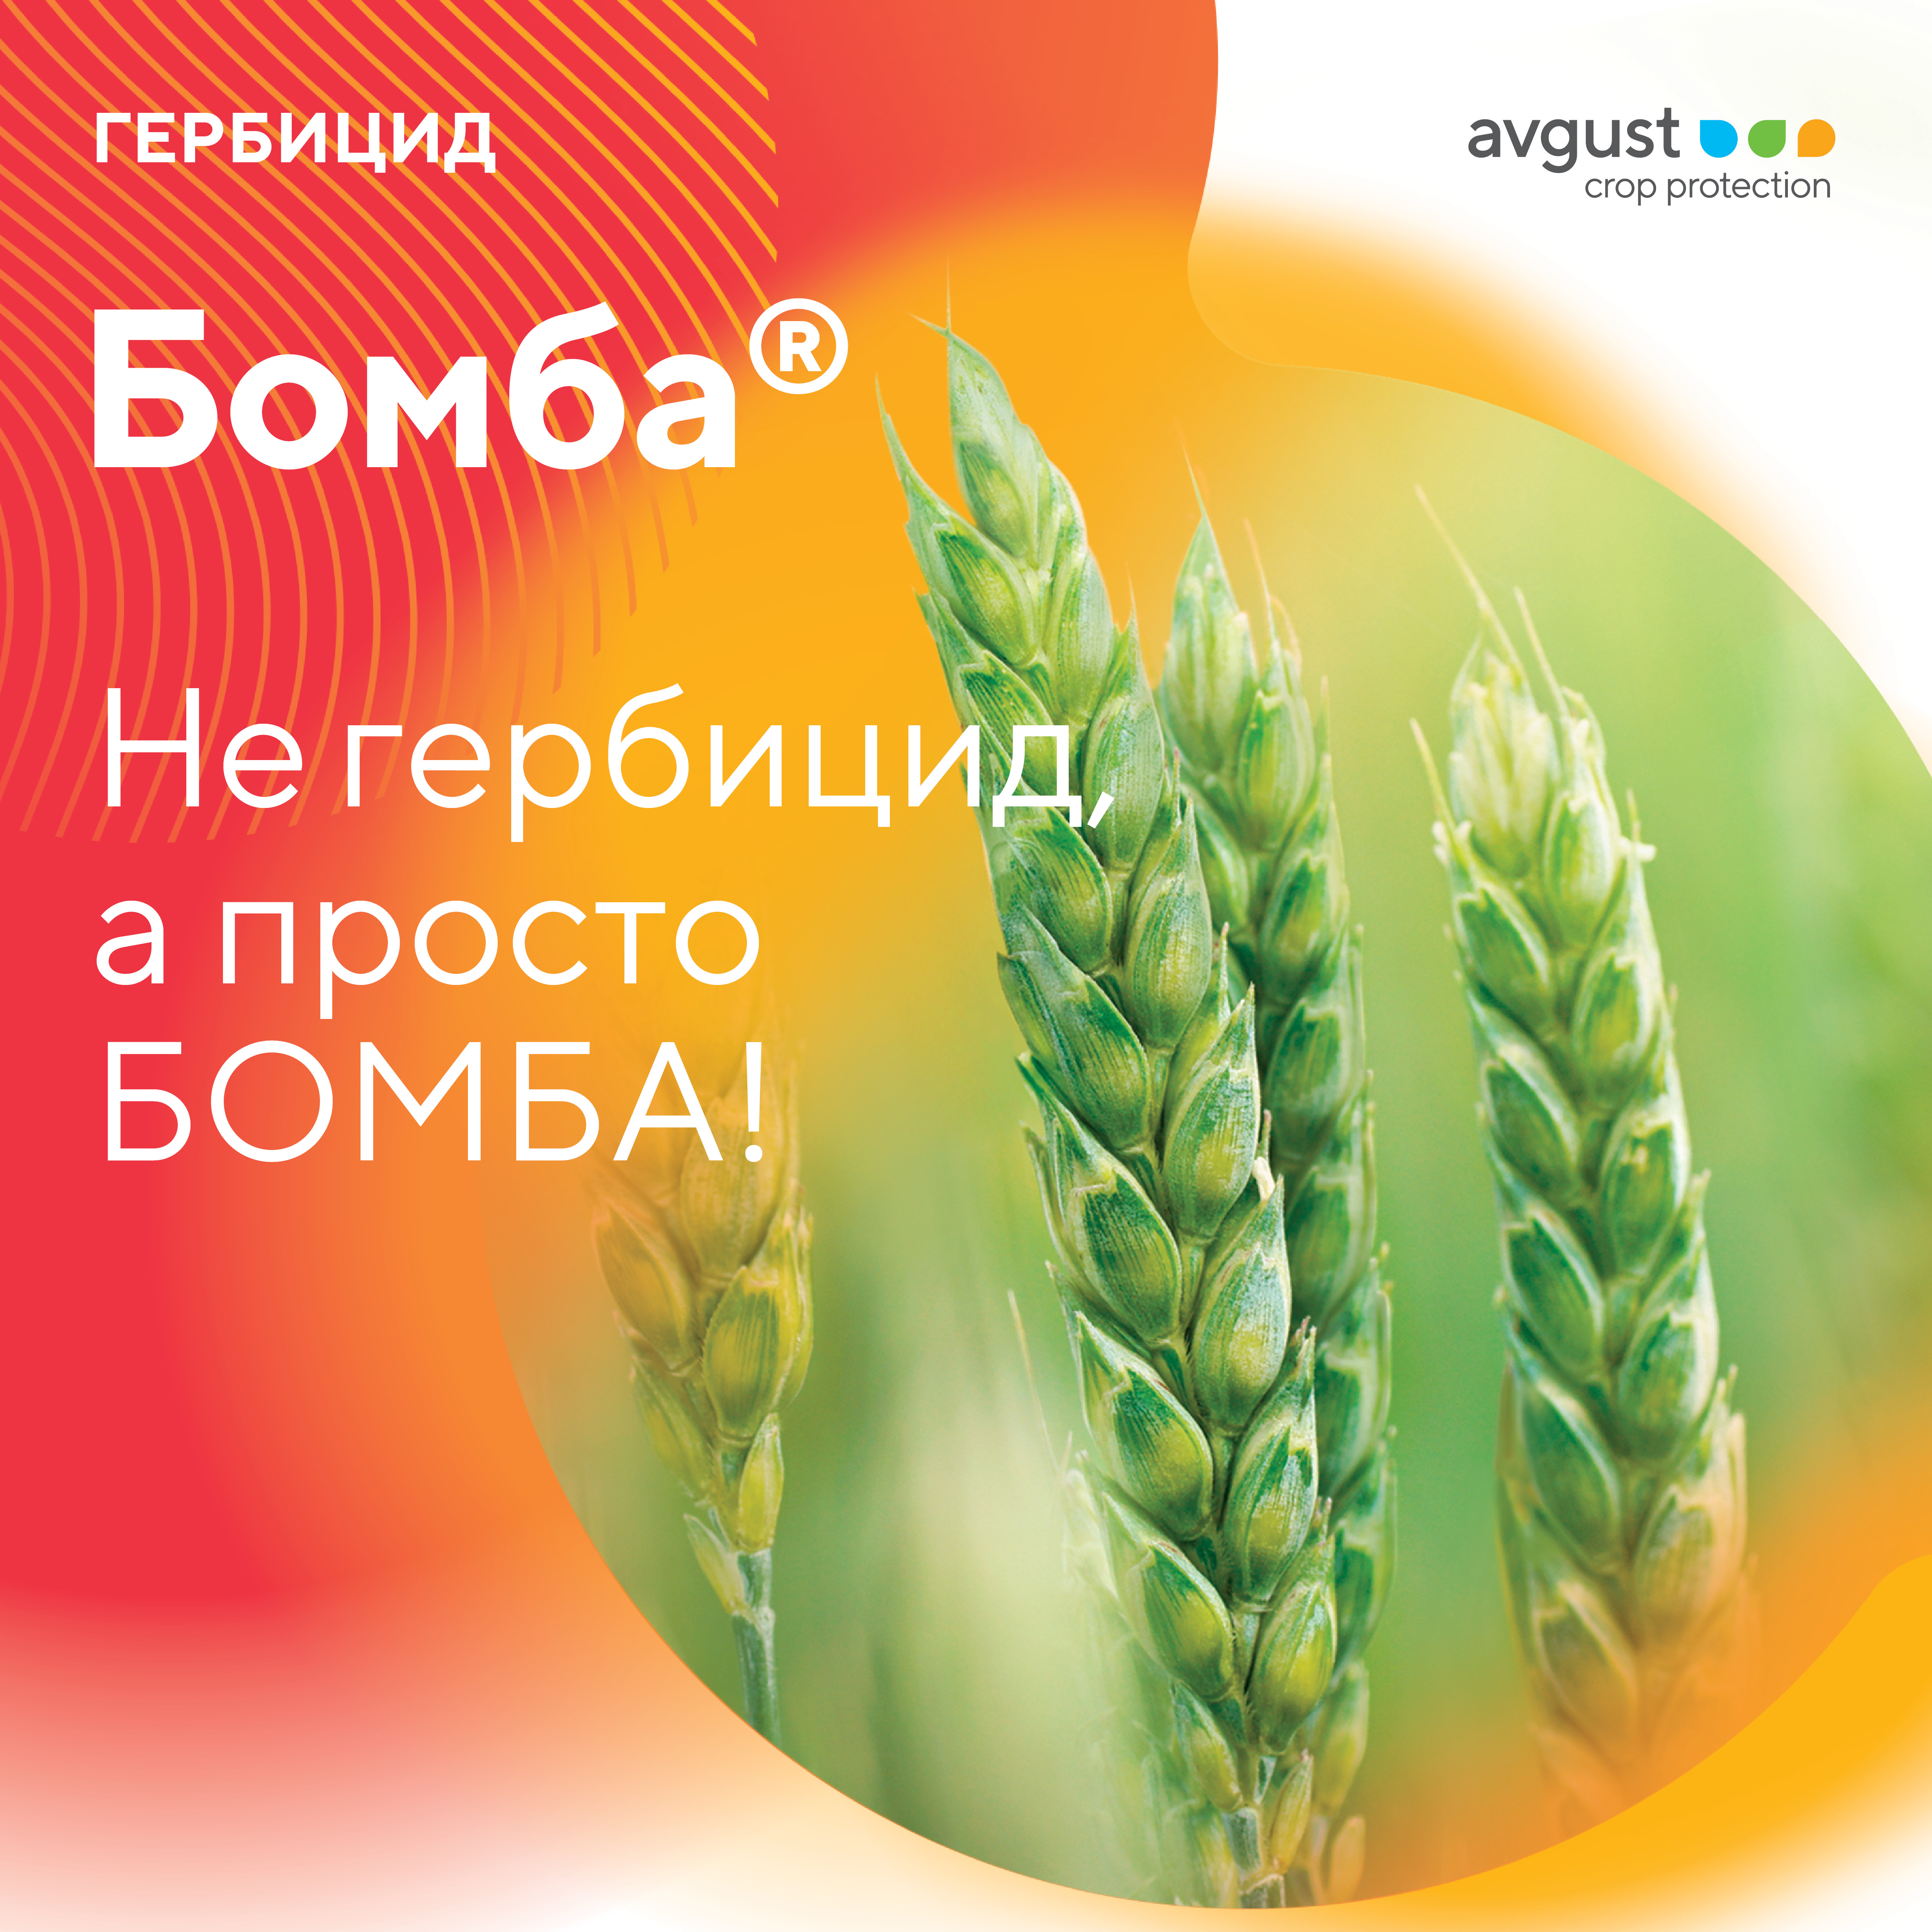 Гербицид Бомба® можно применять для осенней химпрополки озимых зерновых культур